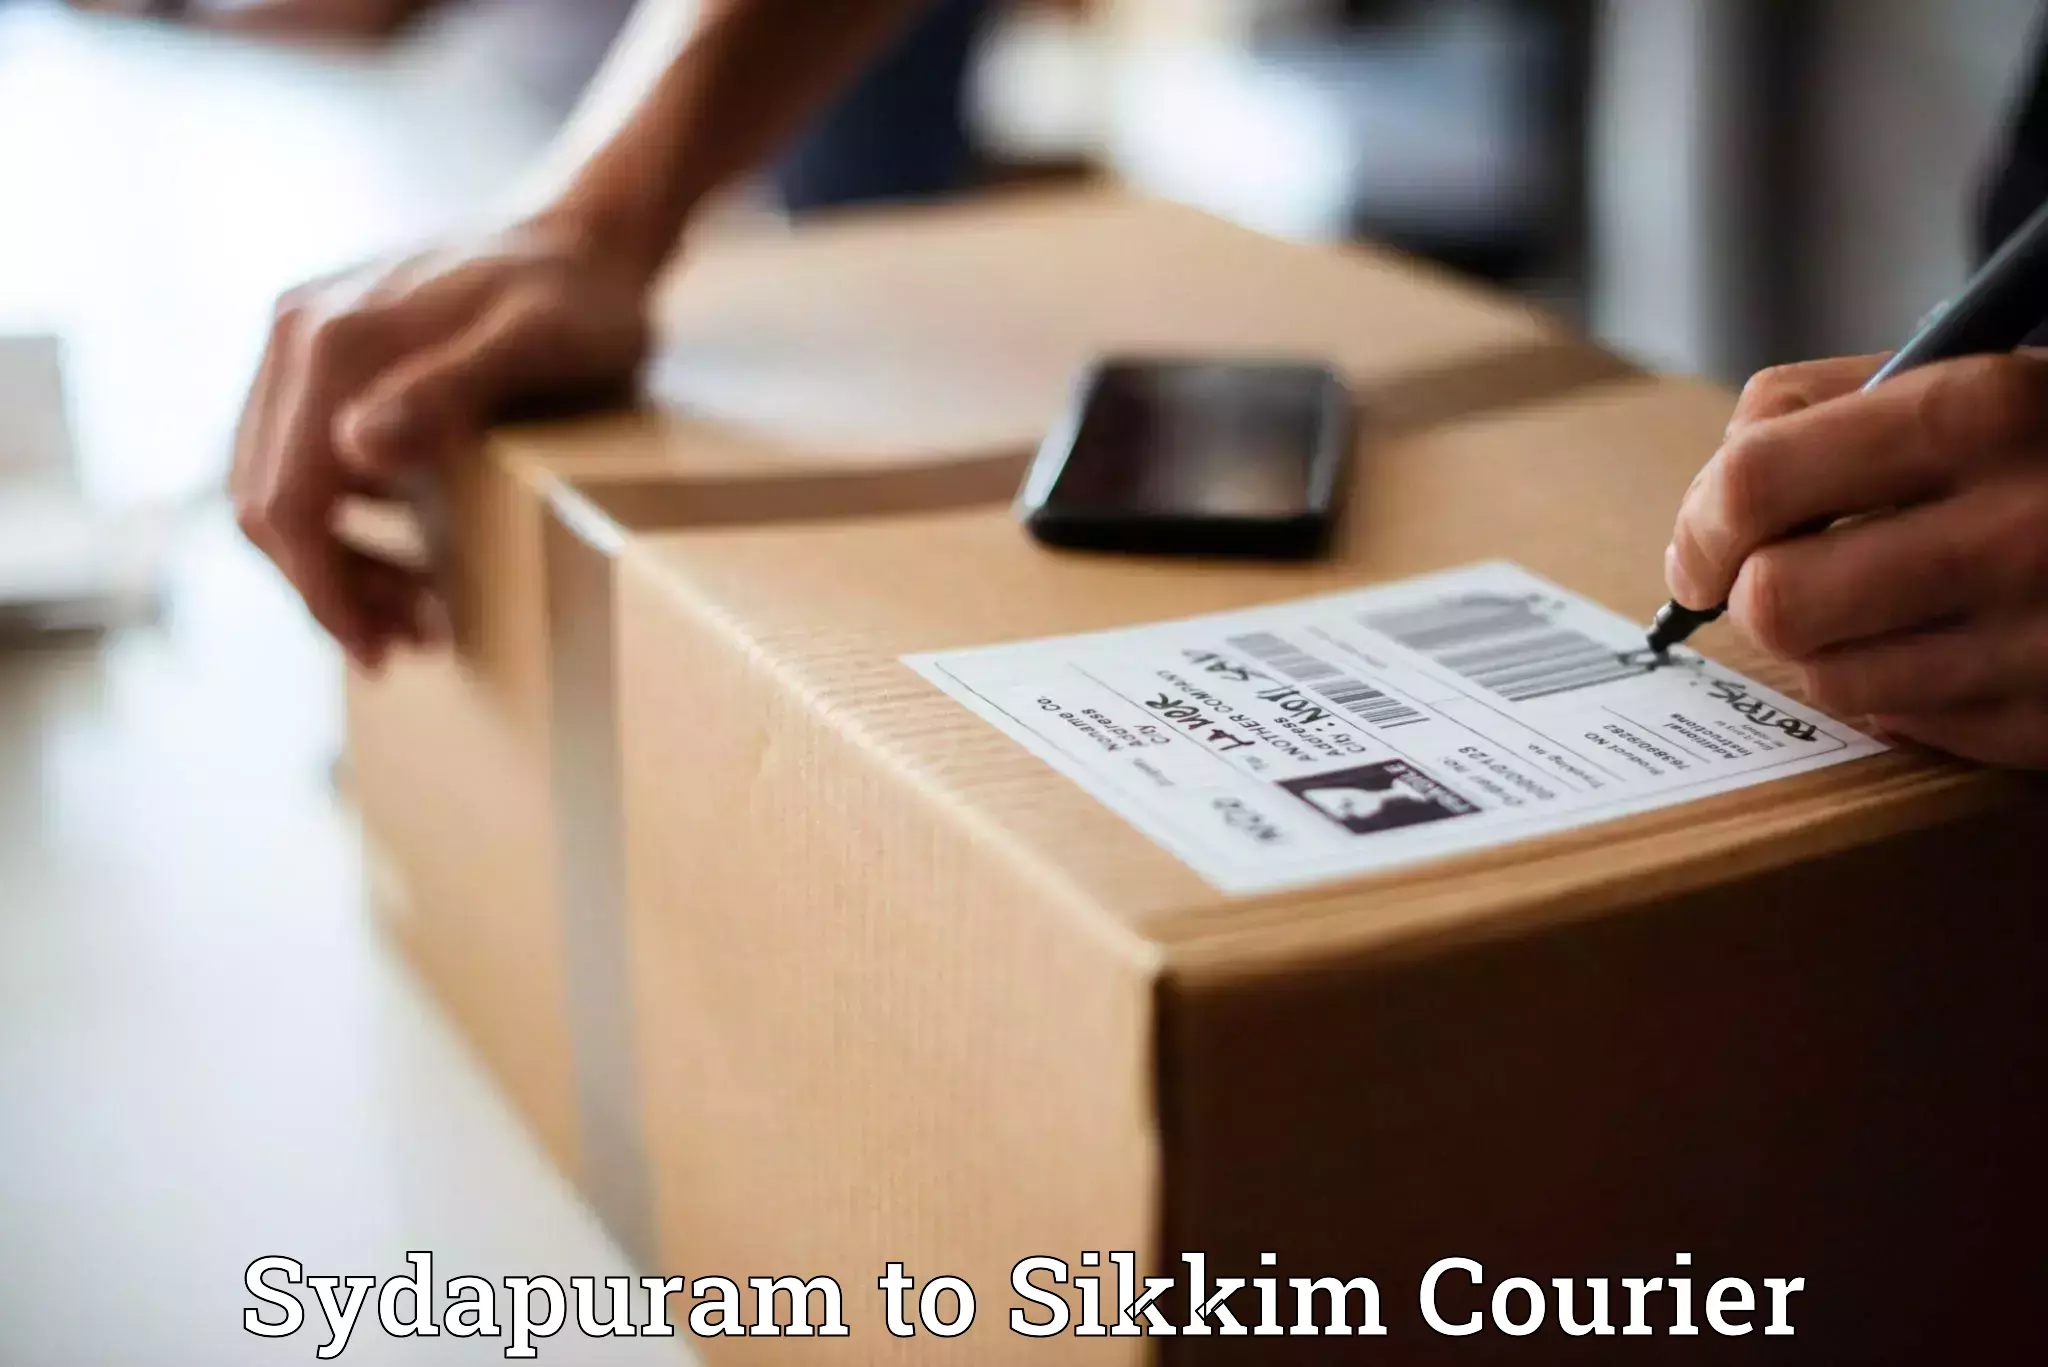 Bulk order courier Sydapuram to Rangpo